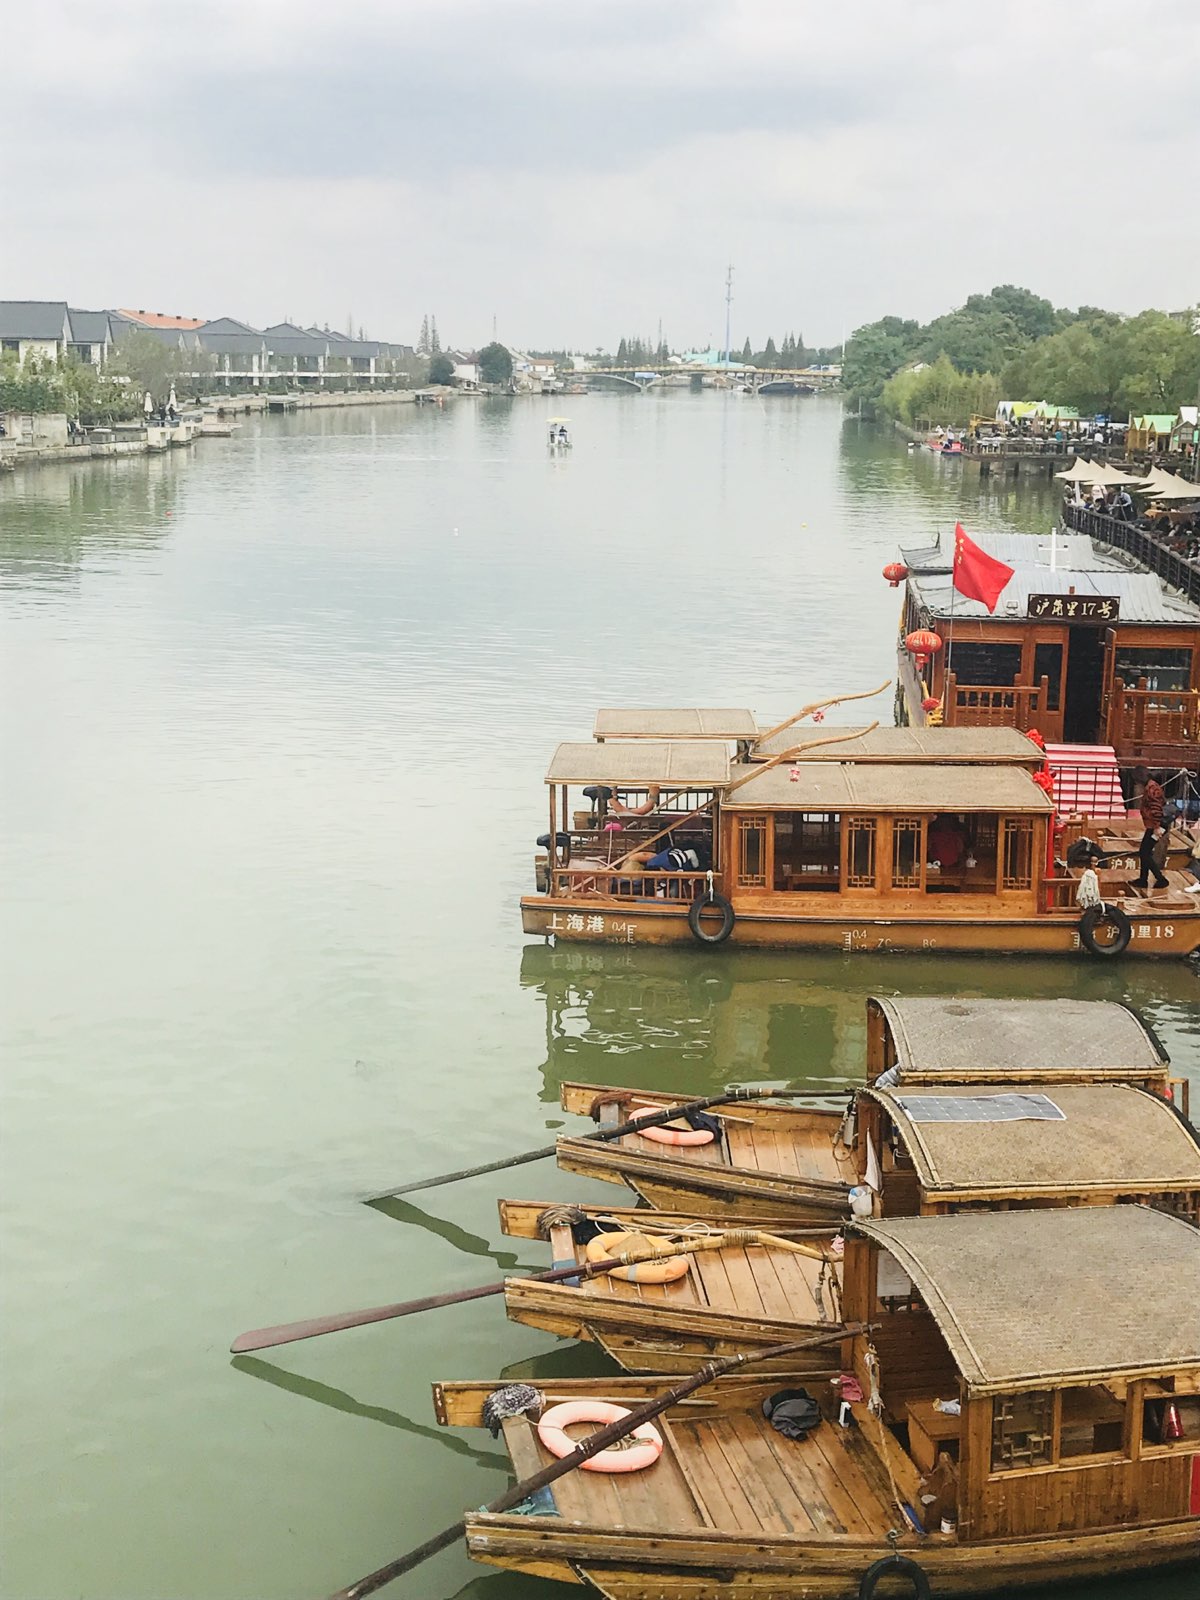 今天在朱家角巧遇赛艇比赛，放生桥上观望淀浦河，美如画。古镇里永远是人山